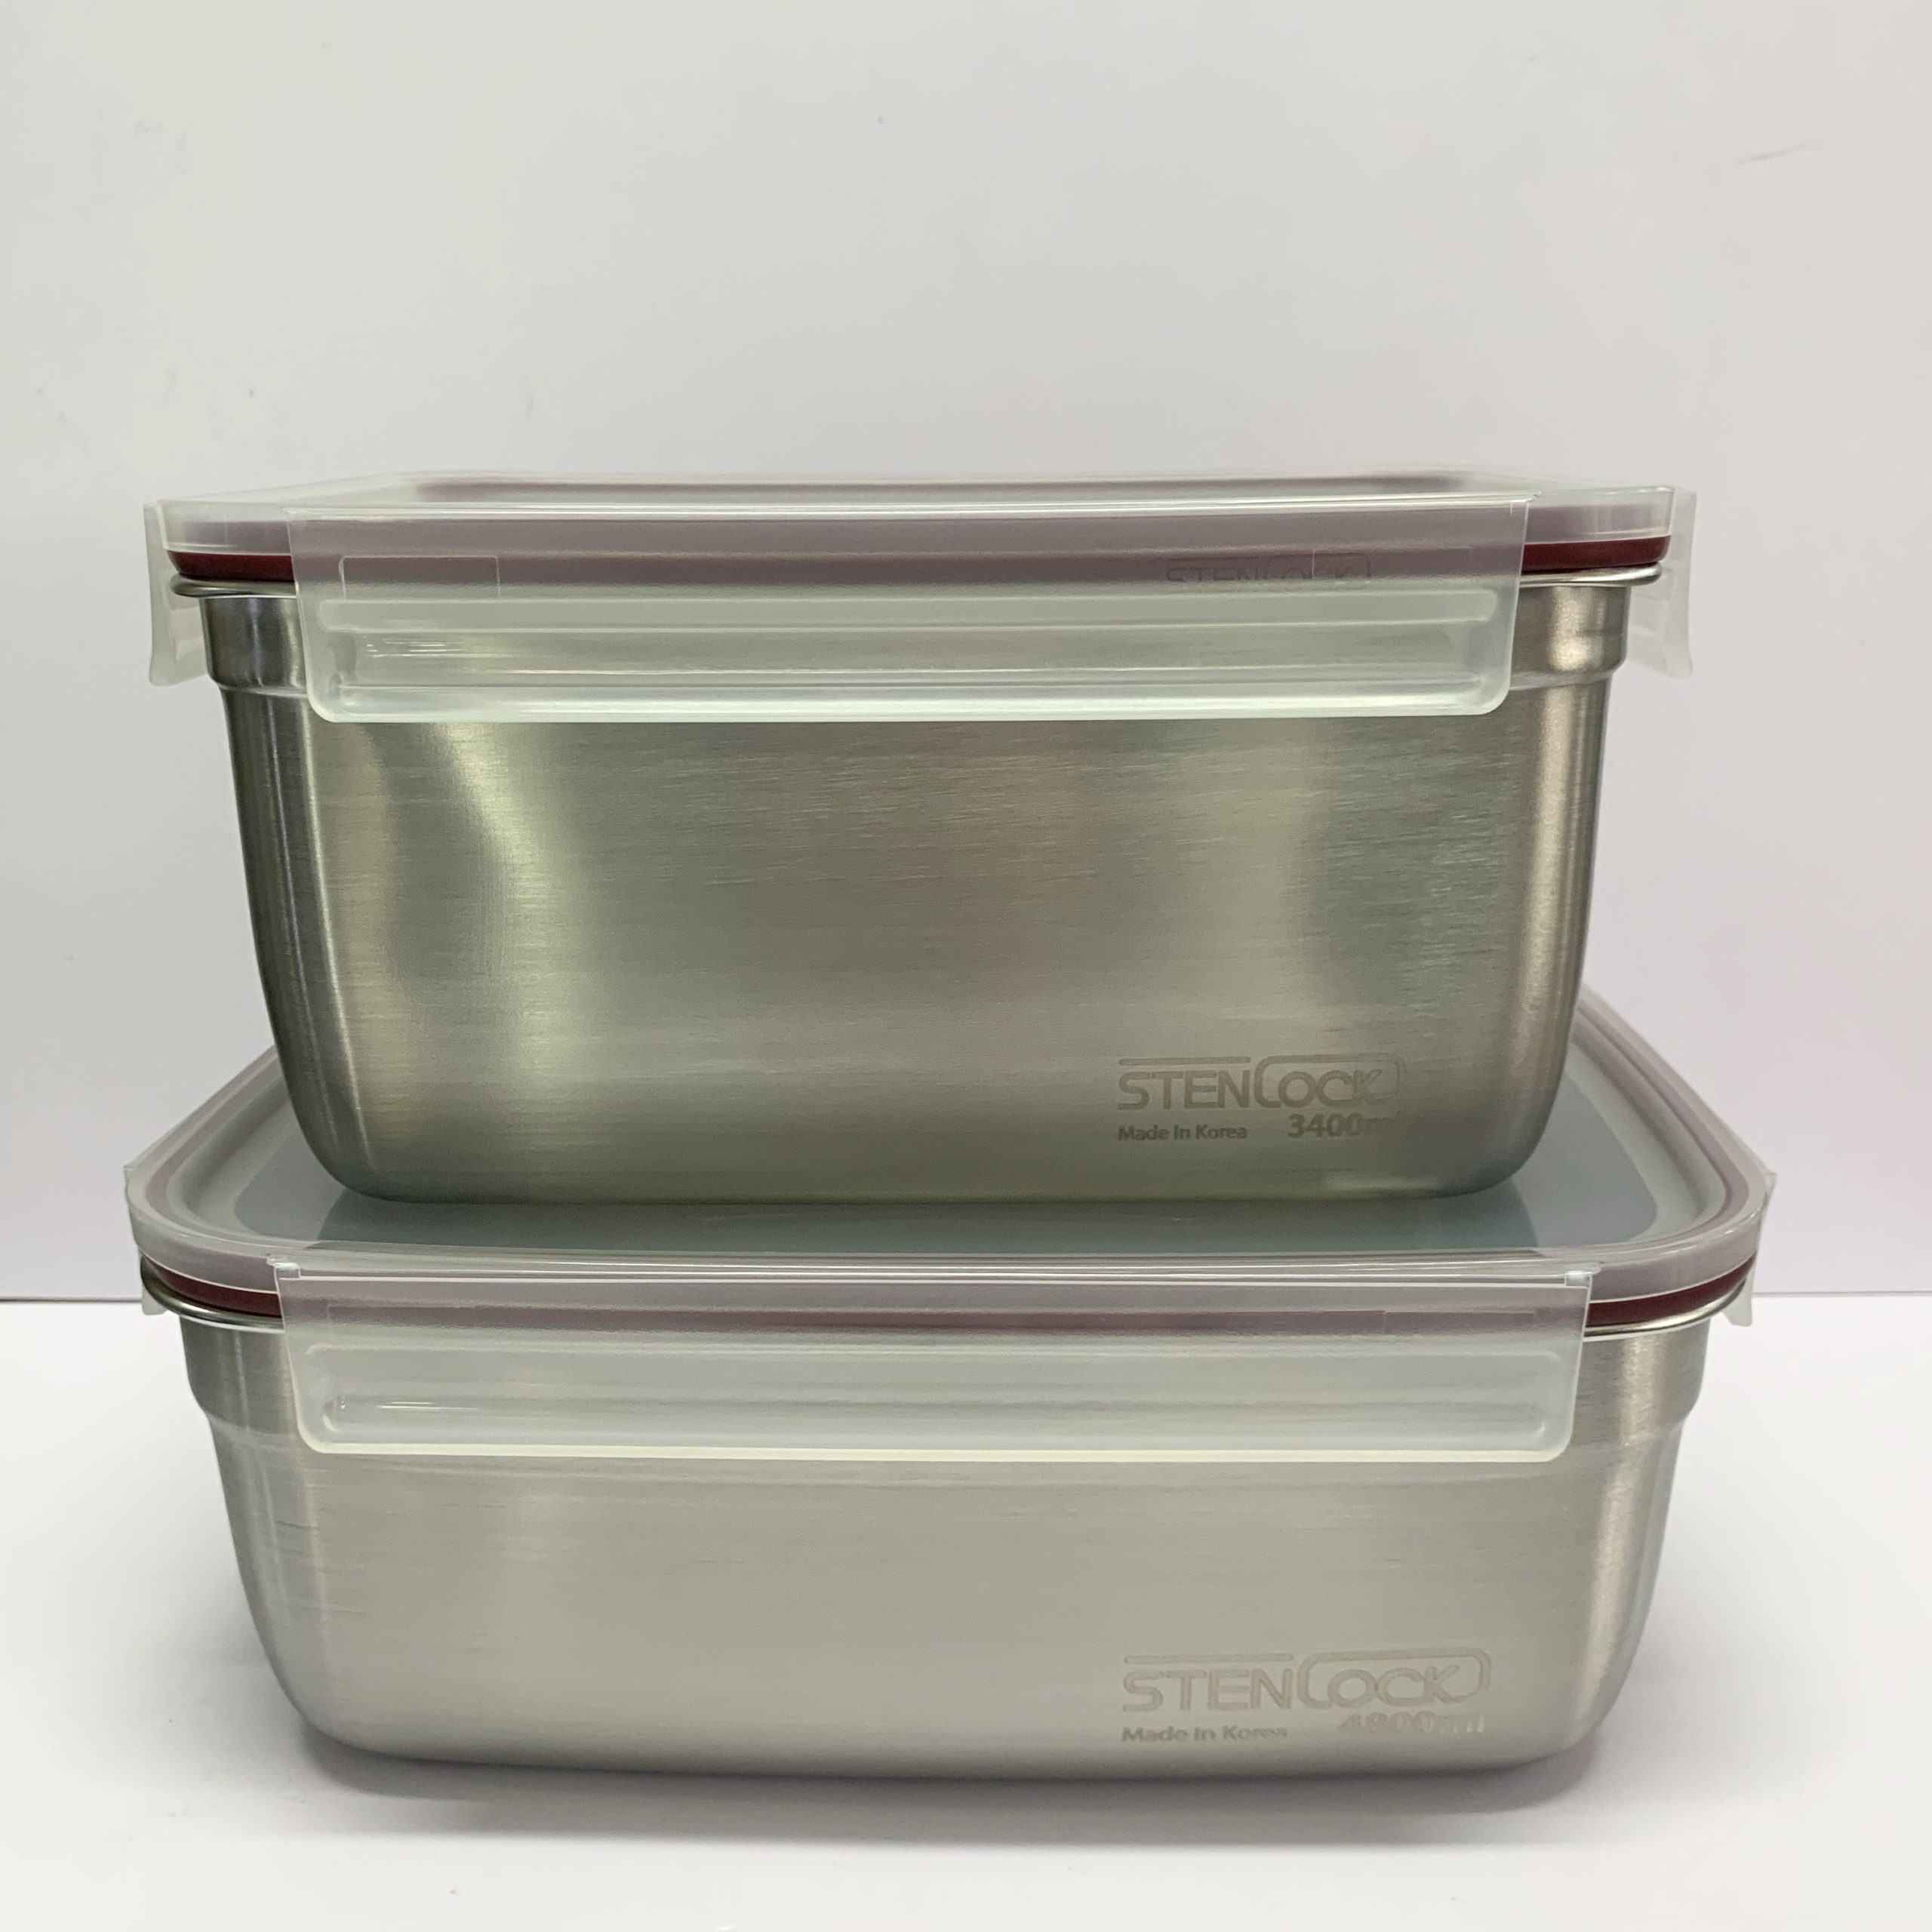 韓國食品-[Stenlock] Stainless Steel Airtight Kimchi Container 3.4L